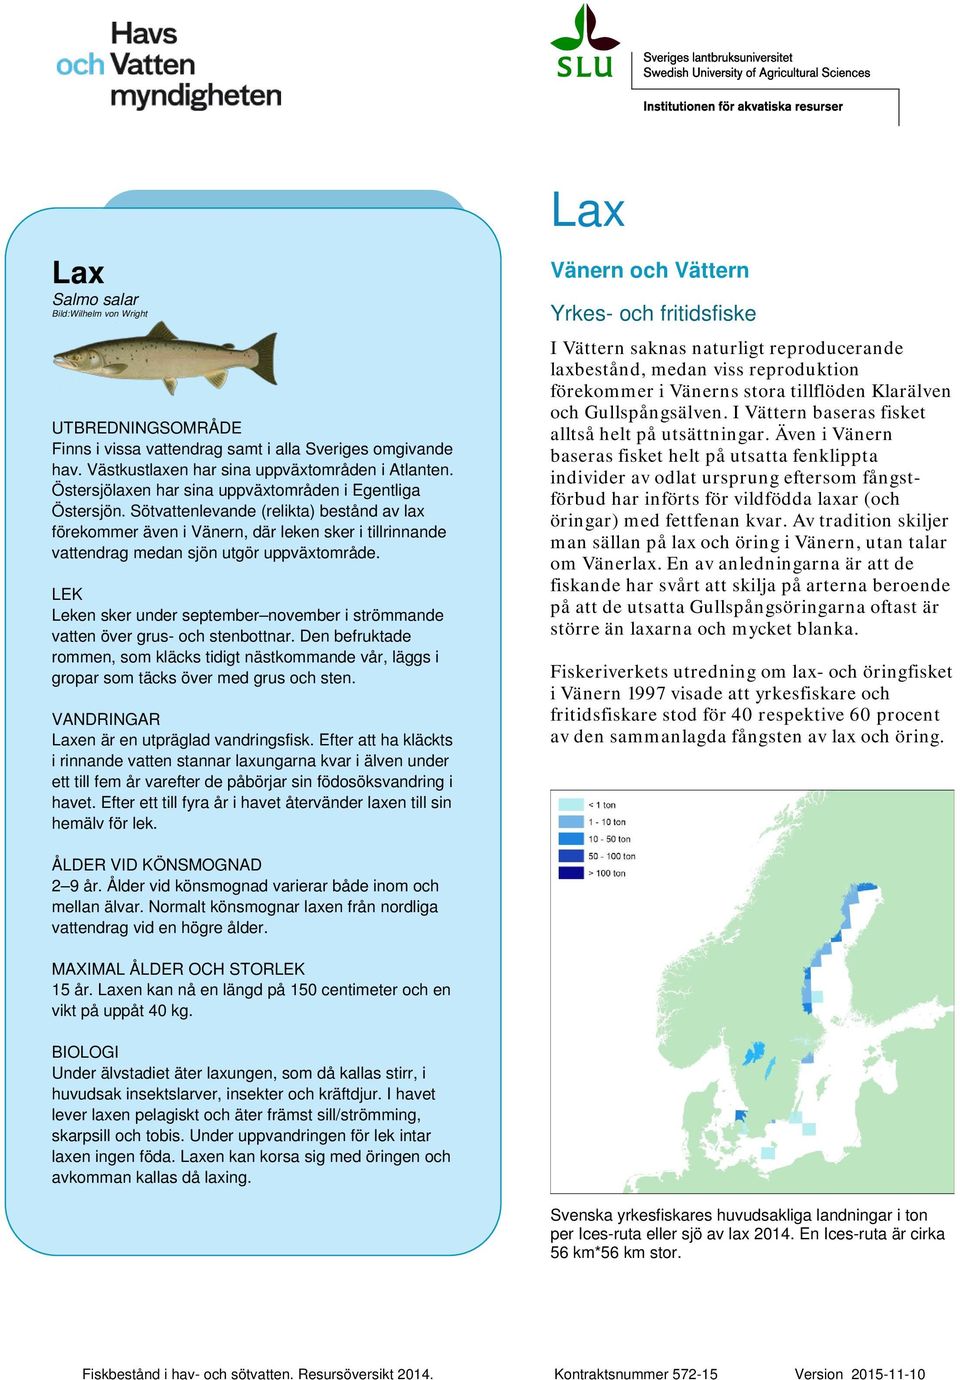 Sötvattenlevande (relikta) bestånd av lax förekommer även i Vänern, där leken sker i tillrinnande vattendrag medan sjön utgör uppväxtområde.